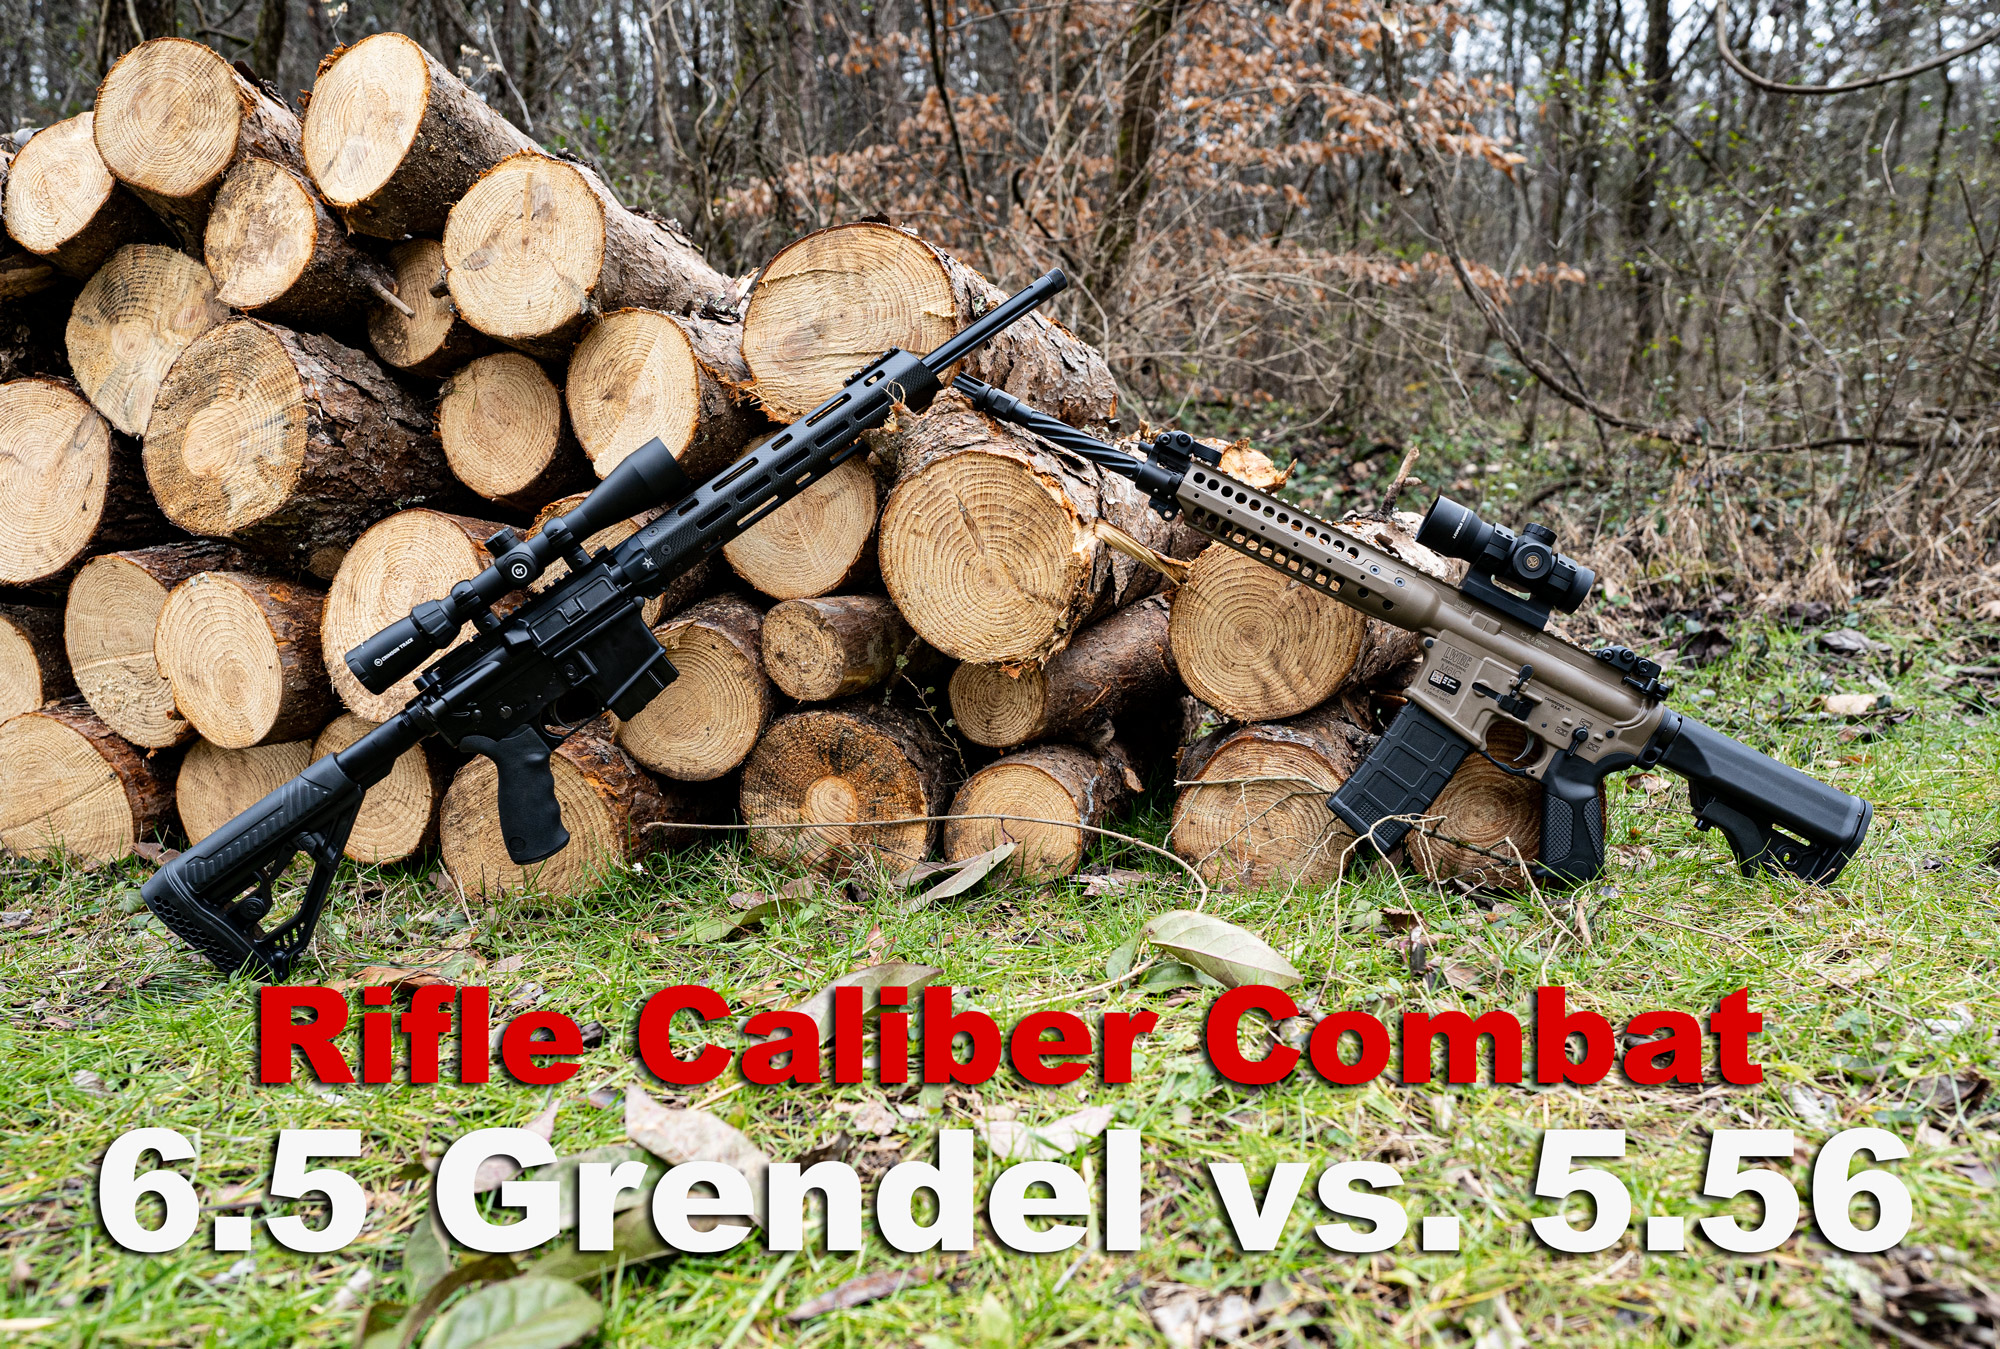 6.5 grendel vs 5.56 rifles side by side at the range